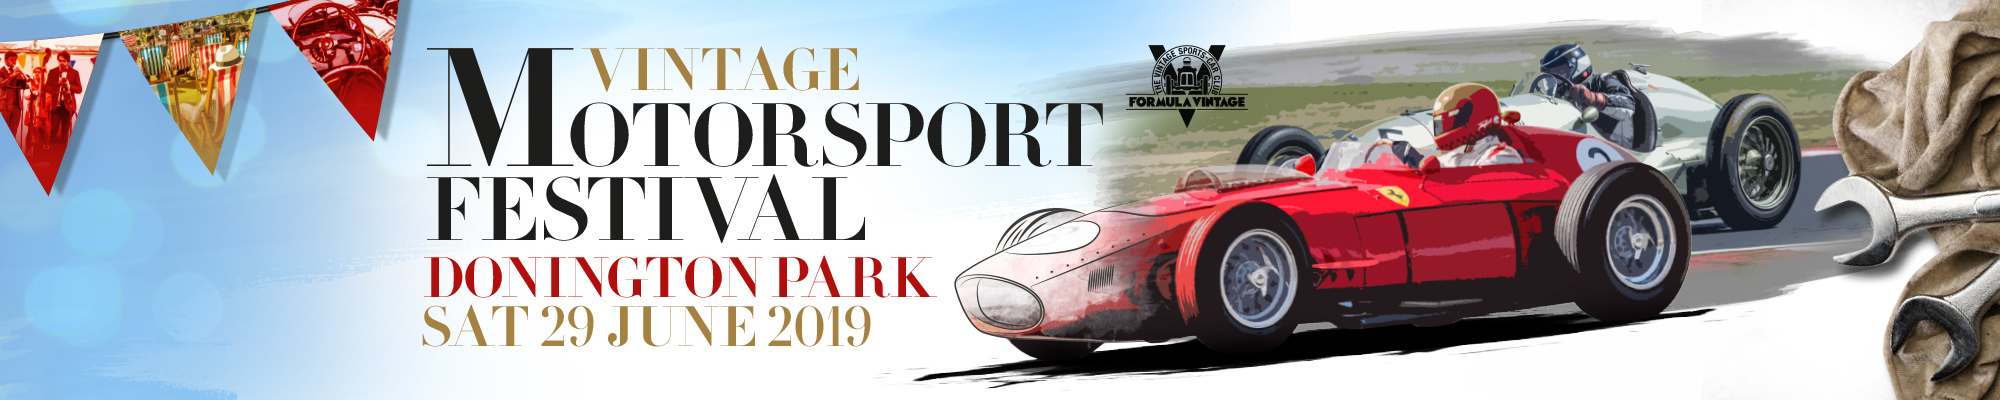 Vintage Motorsport Festival - Featuring Formula Vintage